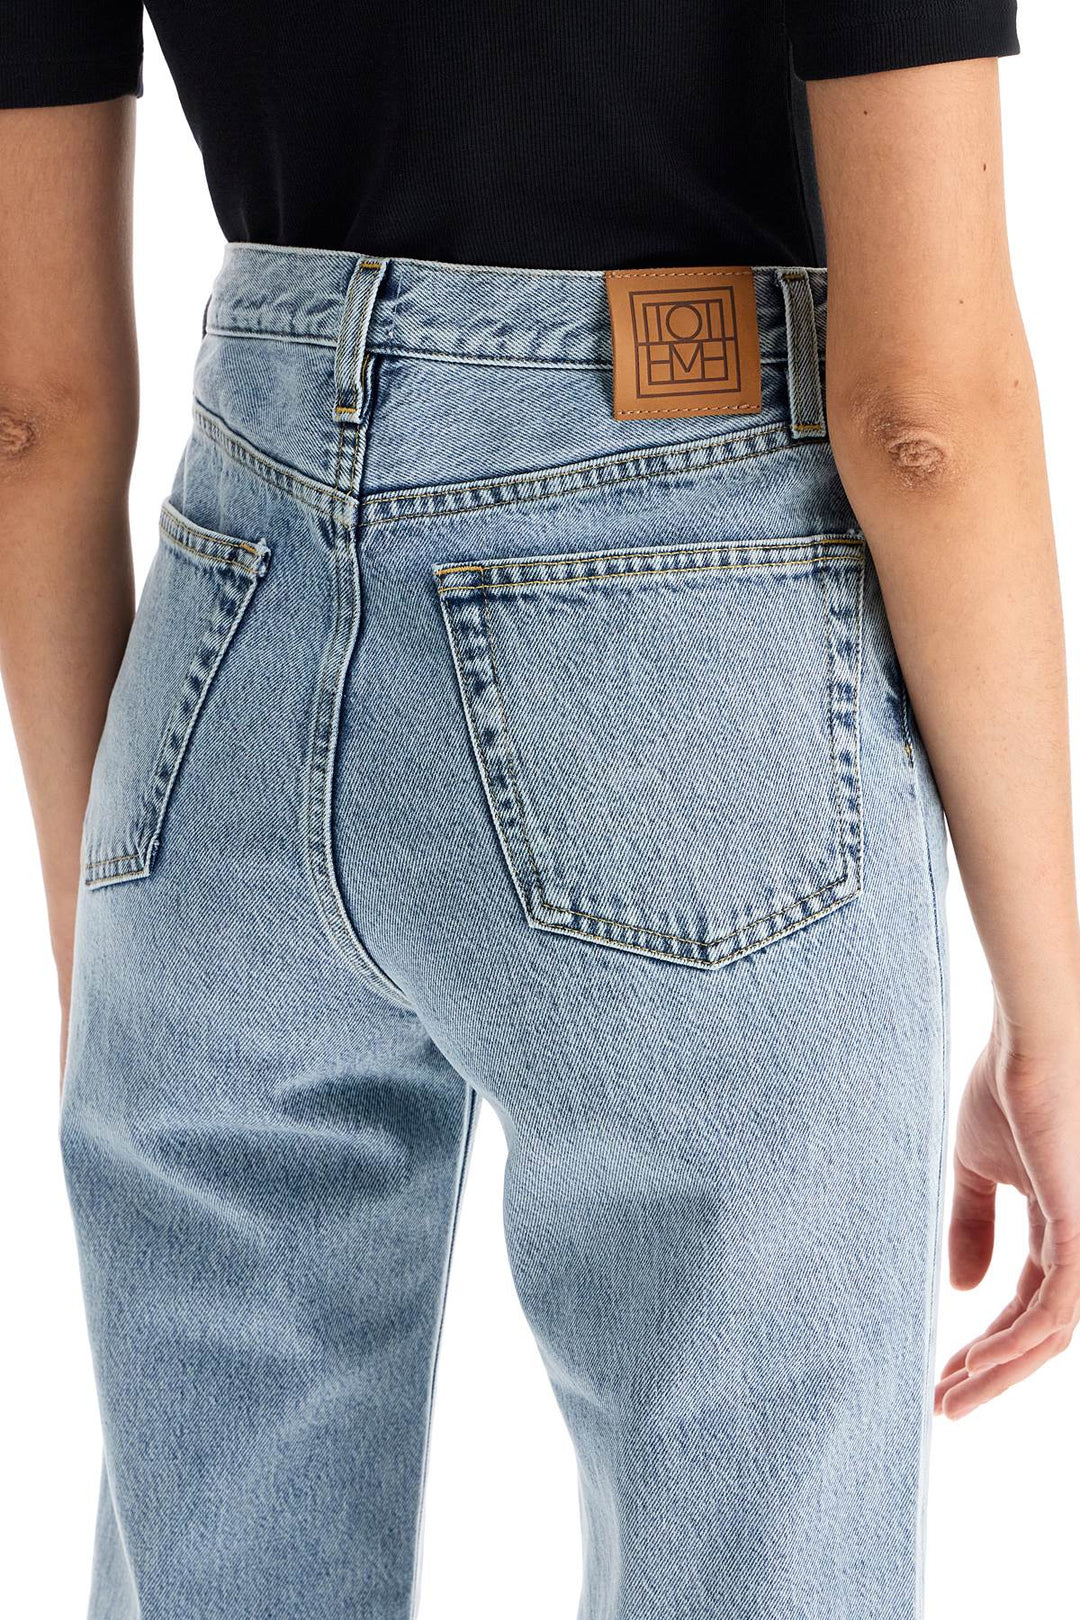 Toteme Organic Denim Classic Cut Jeans   Blue